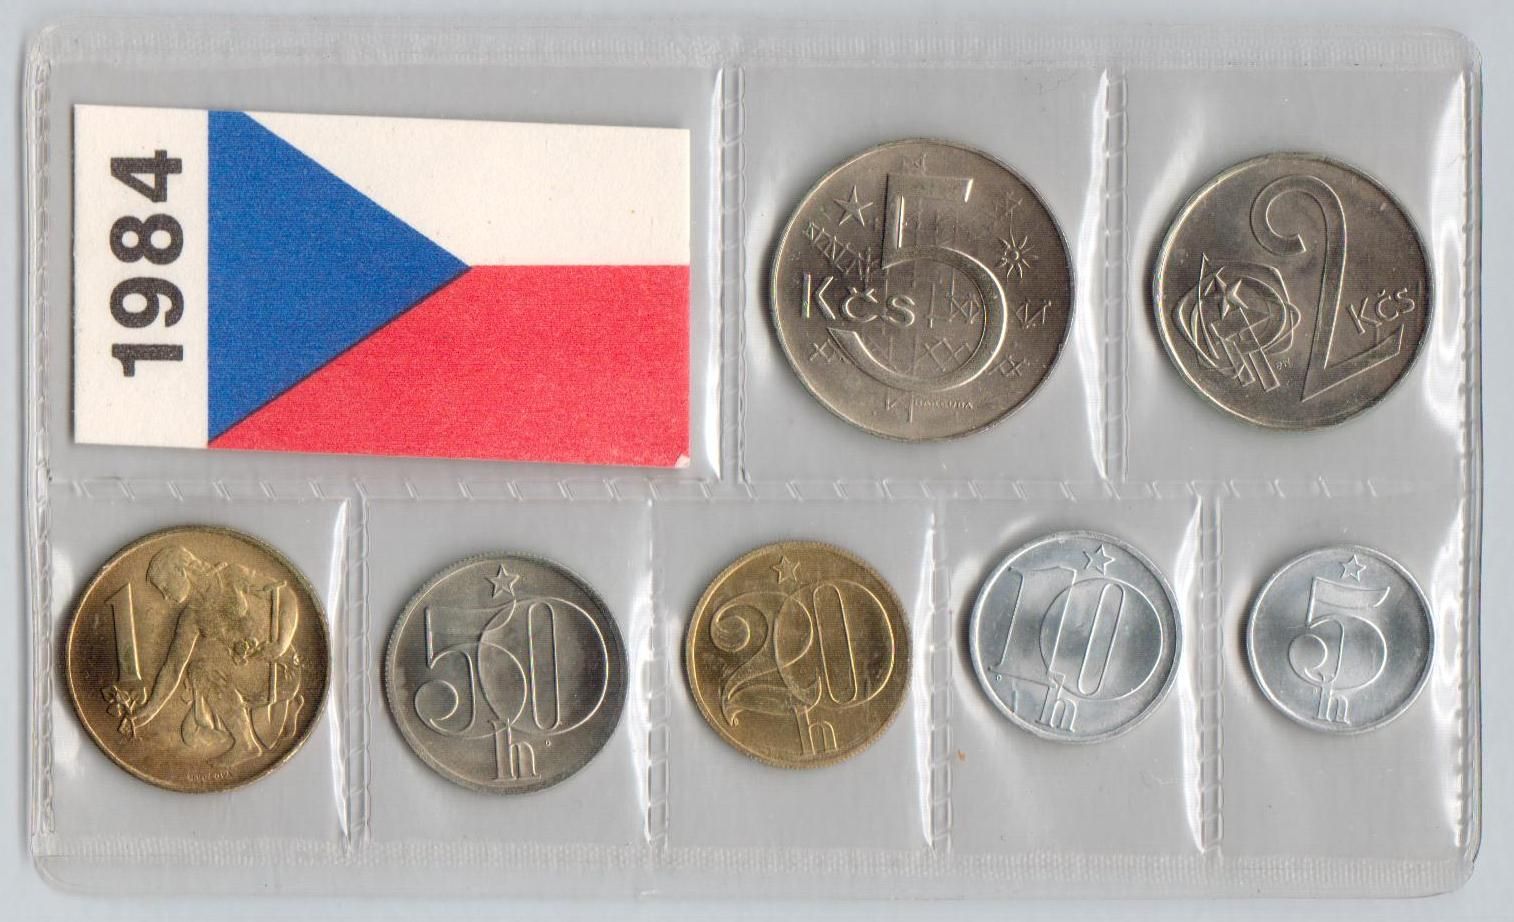 Ročníková sada oběžných mincí ČSSR (1984), stavy 0/0